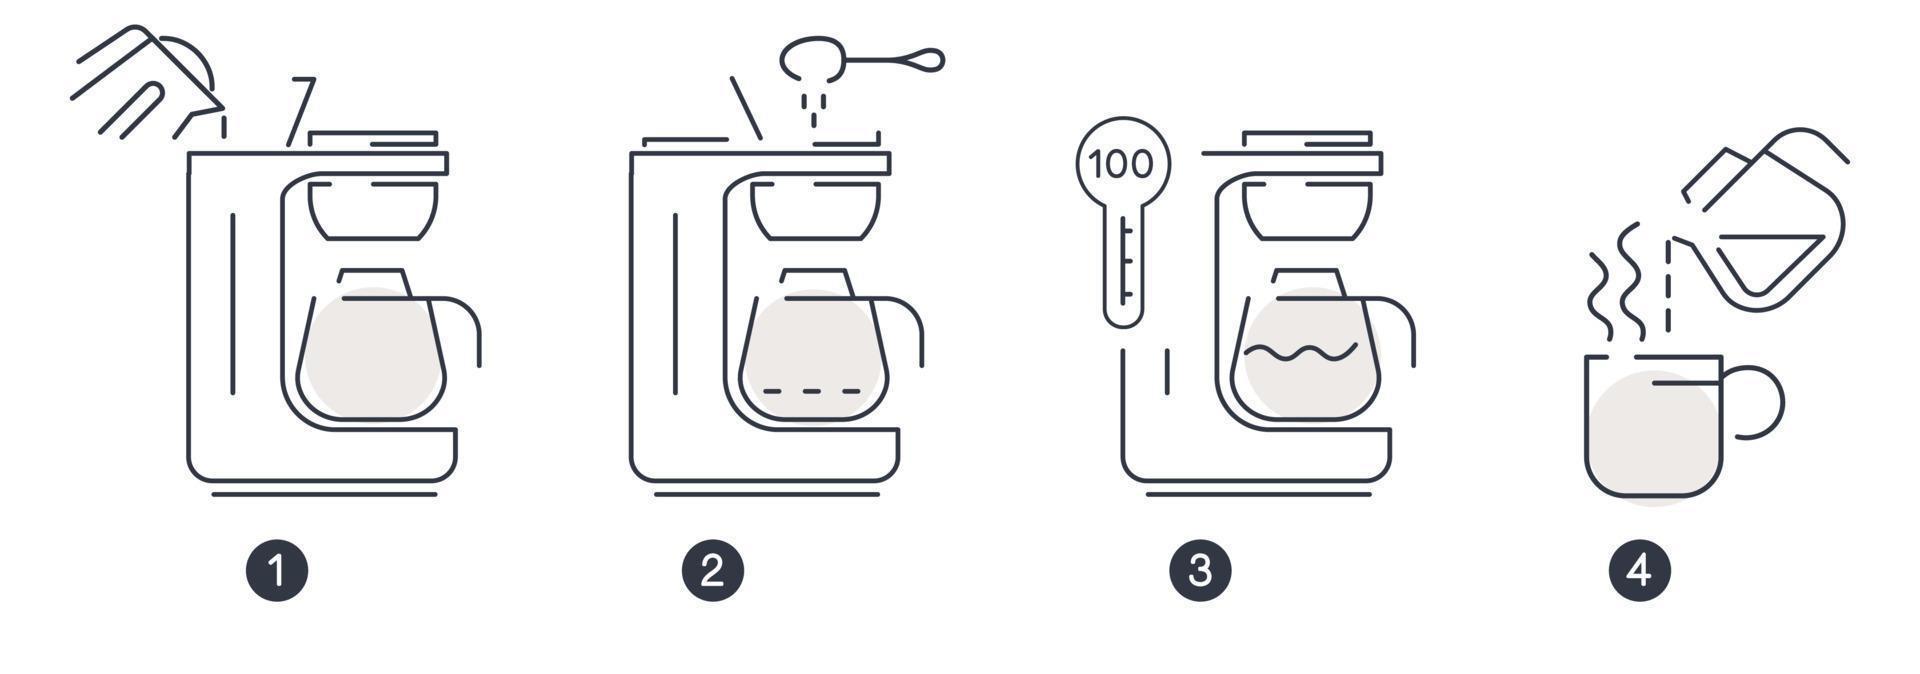 instruções da cafeteira e passos como usar vetor